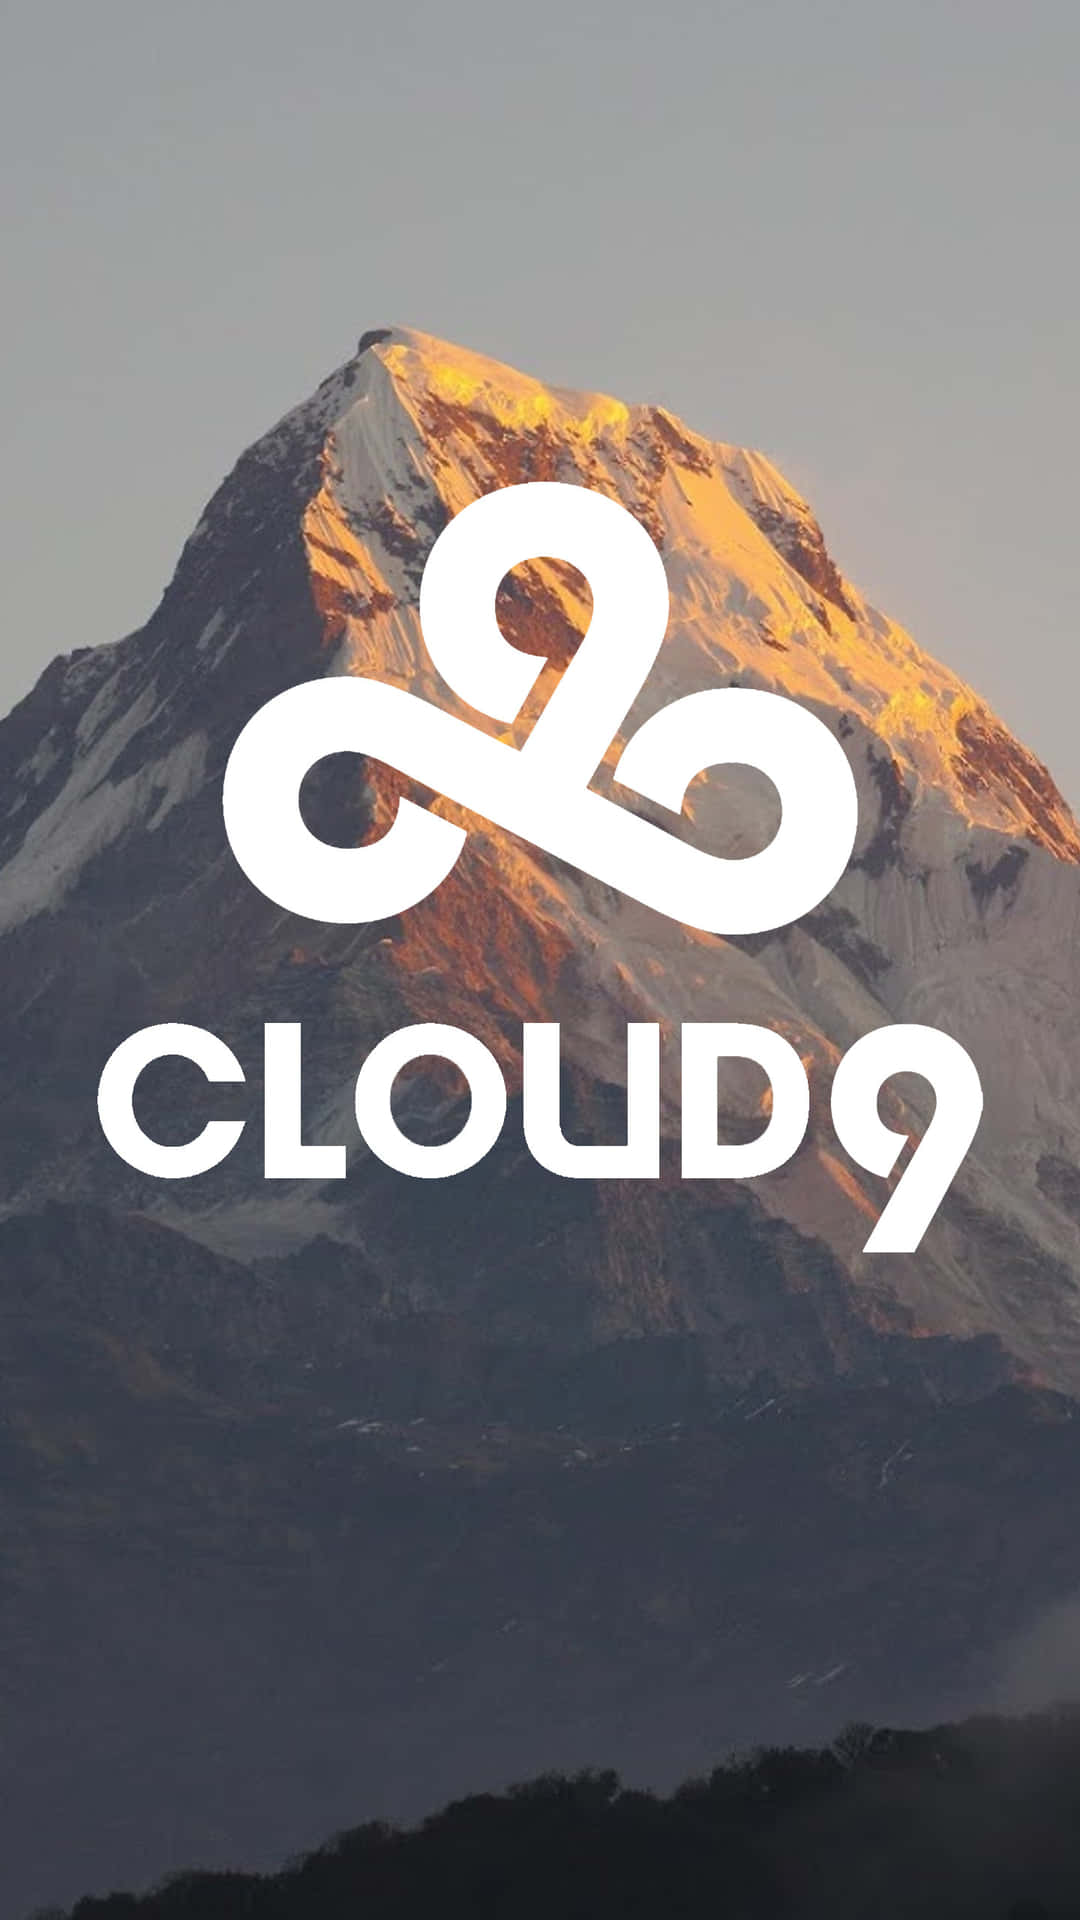 50+] Cloud 9 Wallpaper Reddit - WallpaperSafari